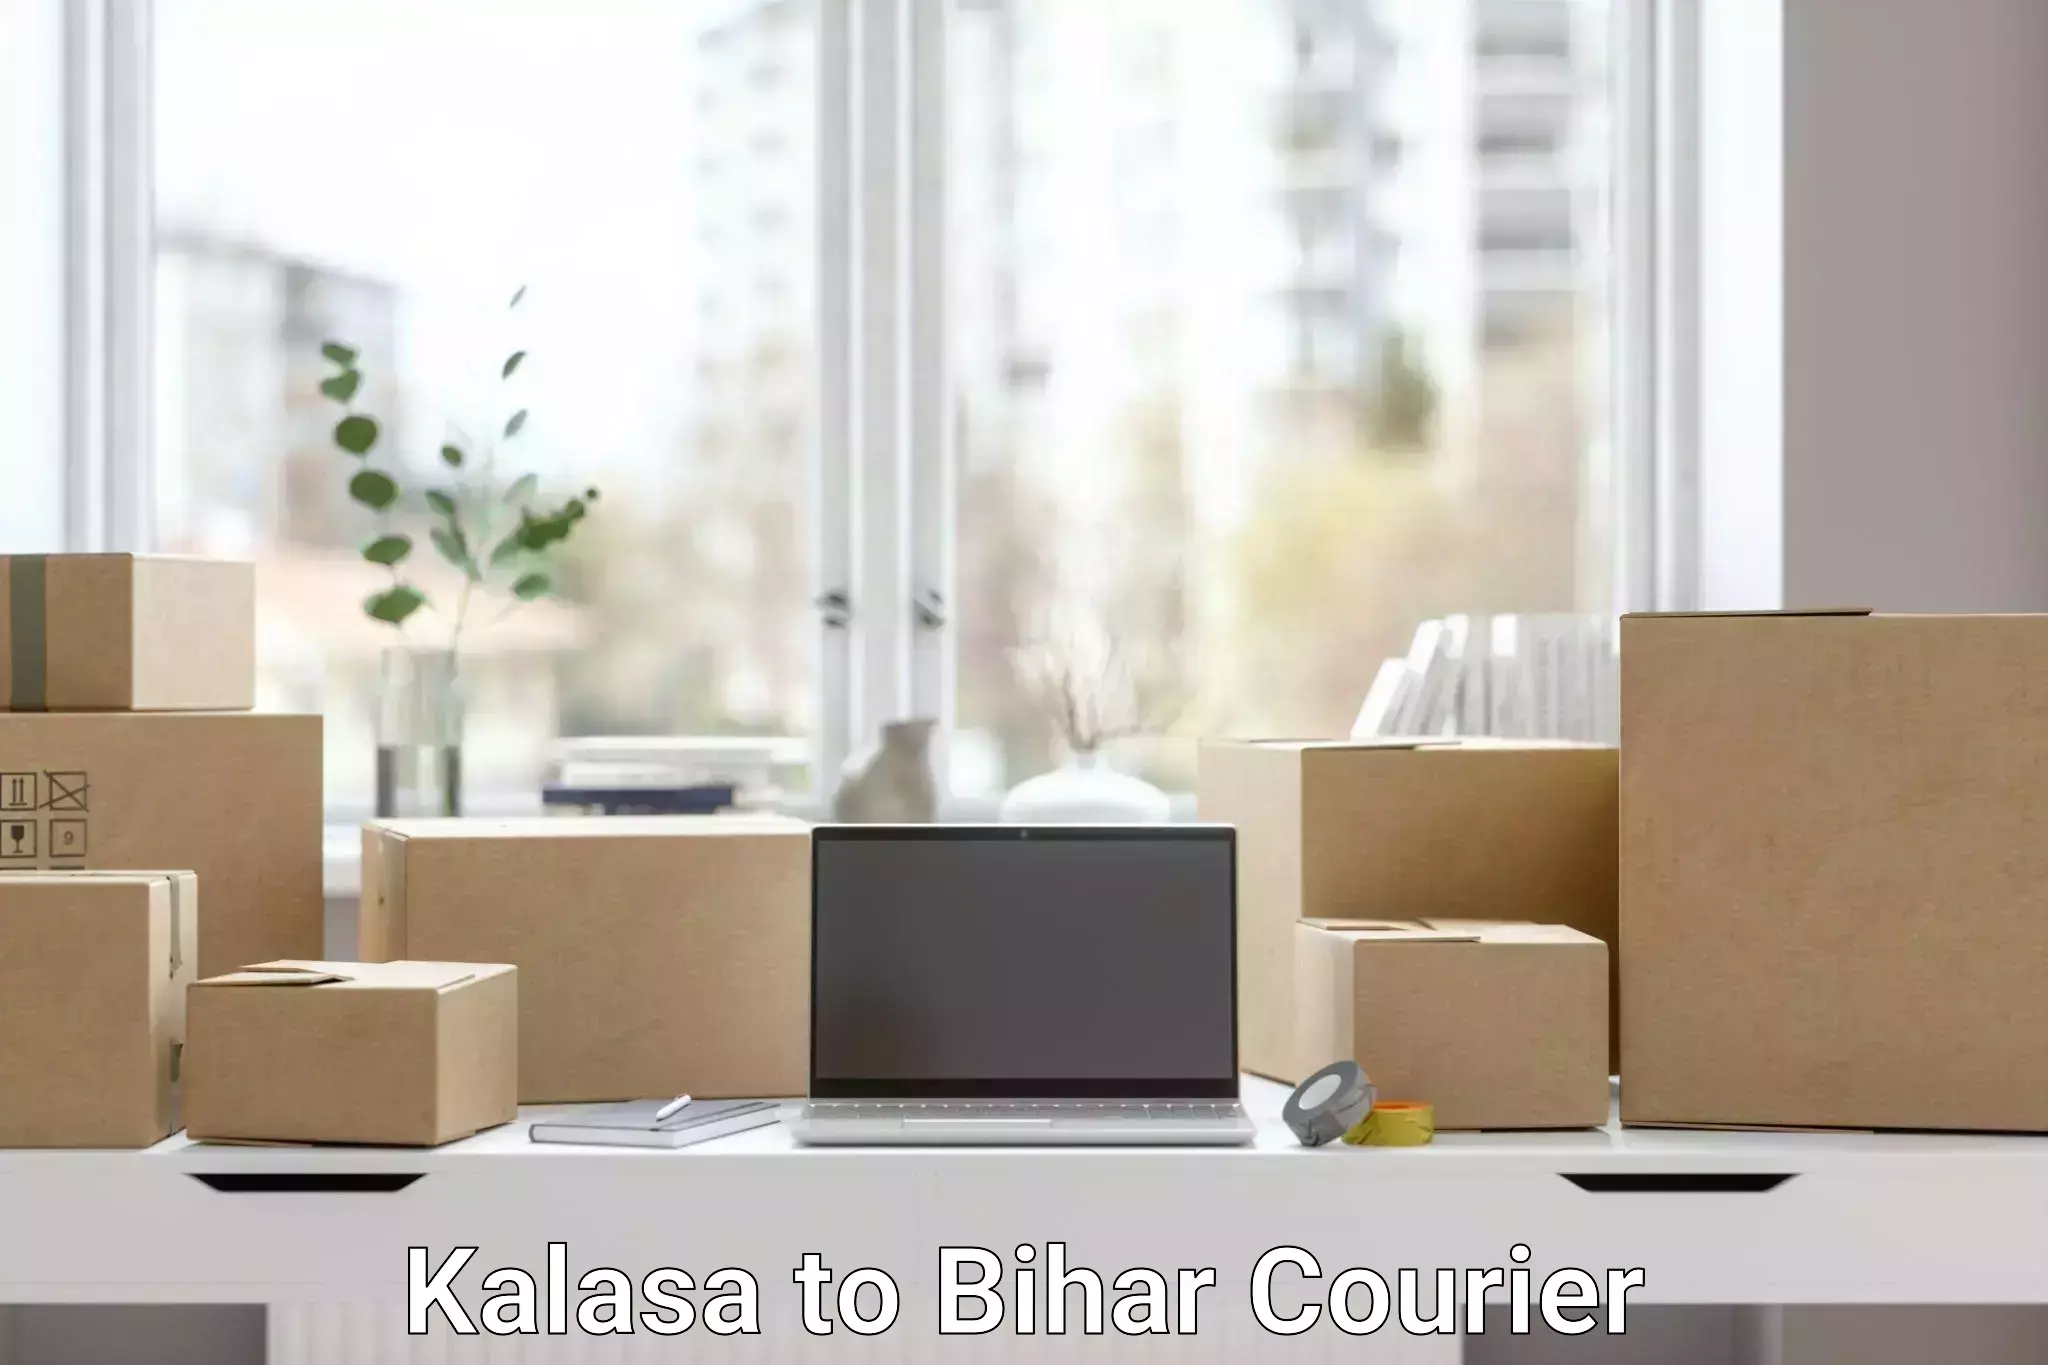 Customer-centric shipping Kalasa to Bhabua